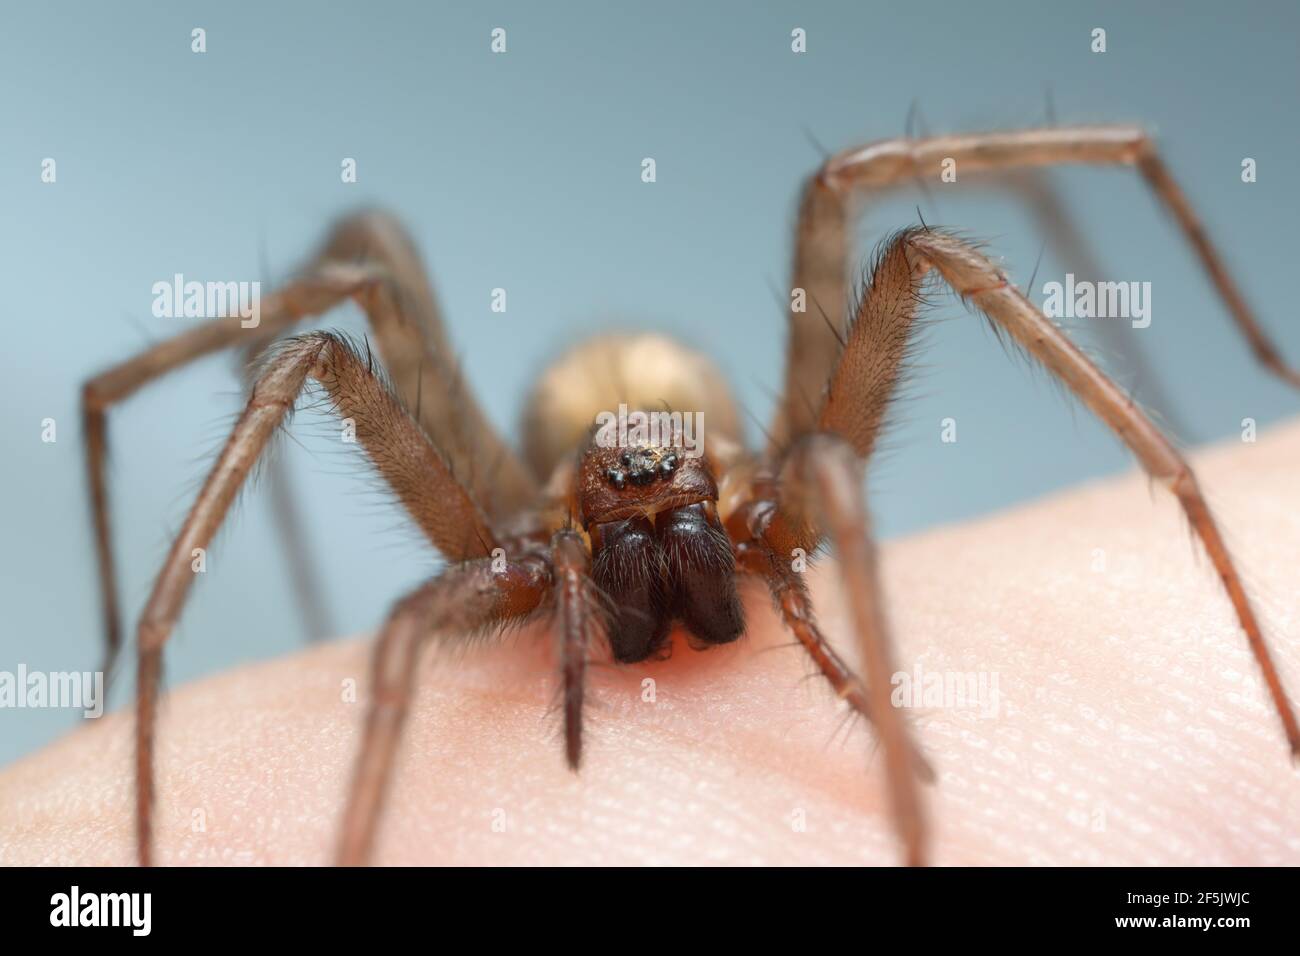 Scheune Trichter Weaver, Tegenaria domestica Spinne auf der menschlichen Haut, kann diese Spinne oft in menschlichen Häusern gefunden werden Stockfoto